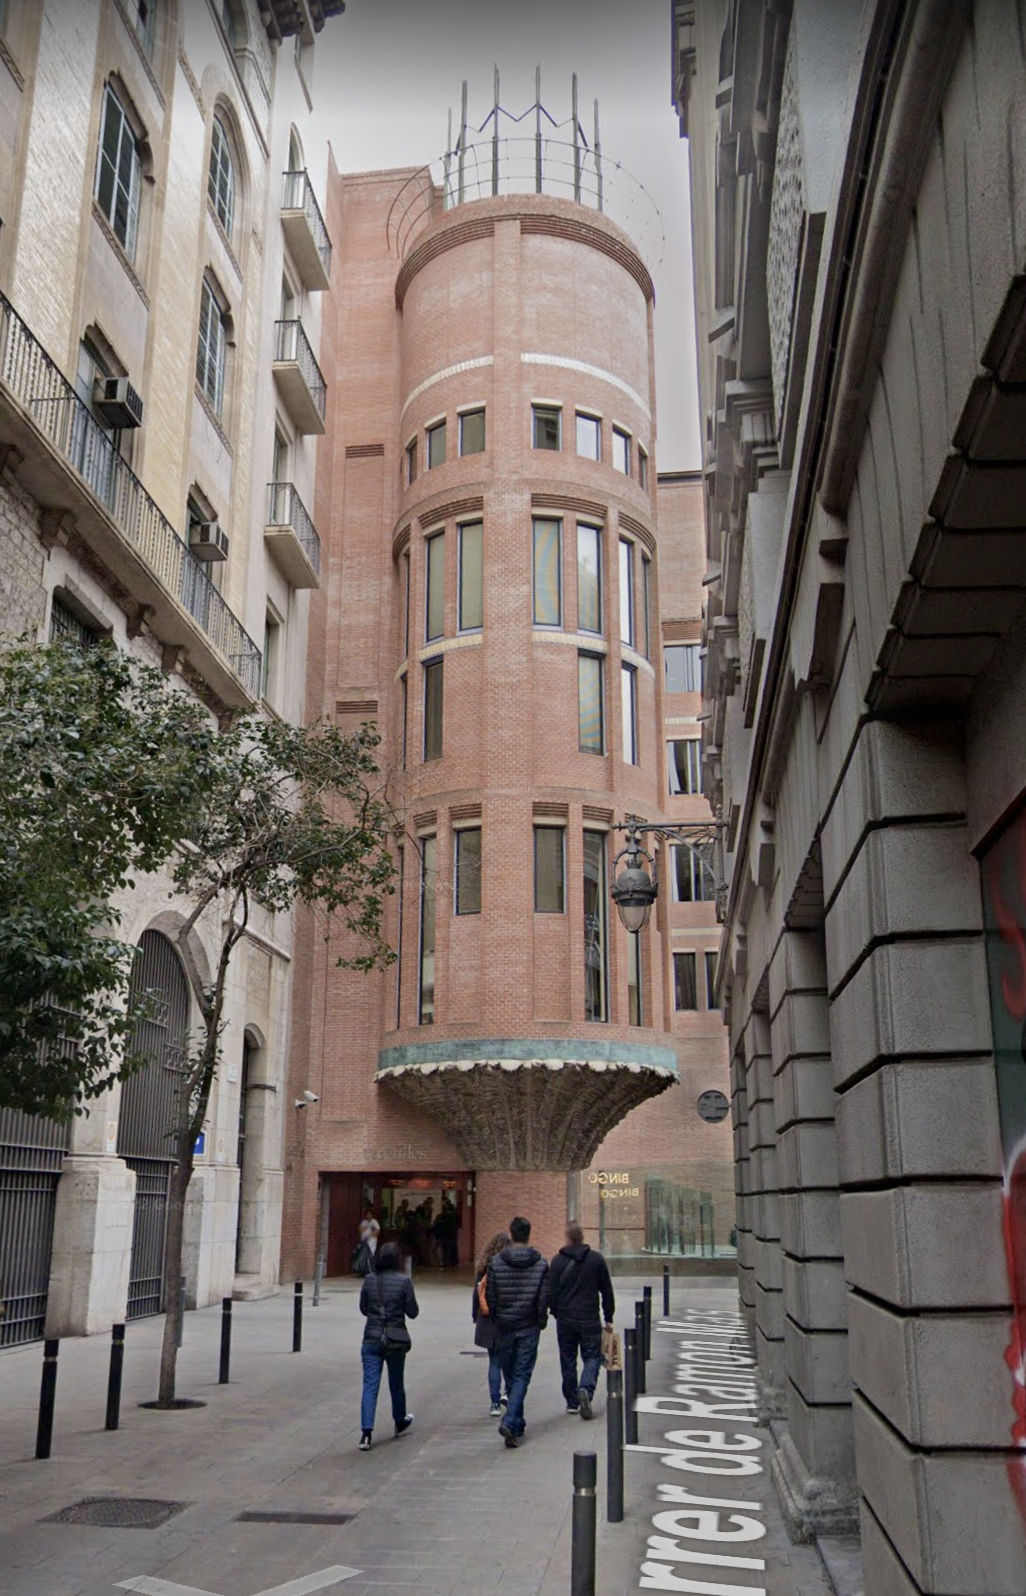 Tower at Palau de la Musica Catalana